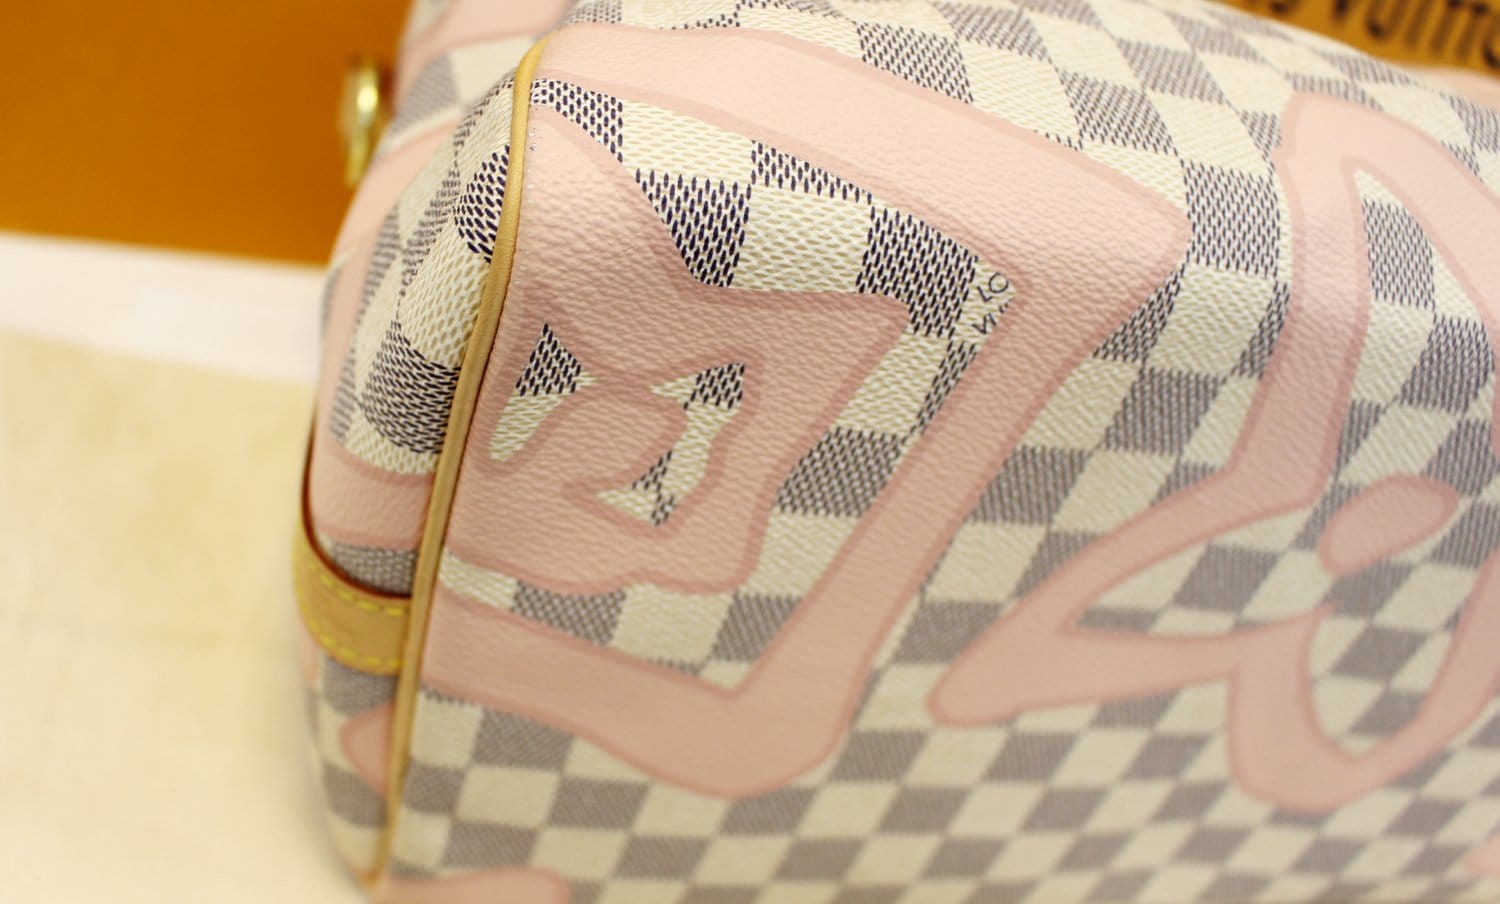 Louis Vuitton Damier Azur Tahitienne Speedy Bandoulière 30 - Handle Bags,  Handbags